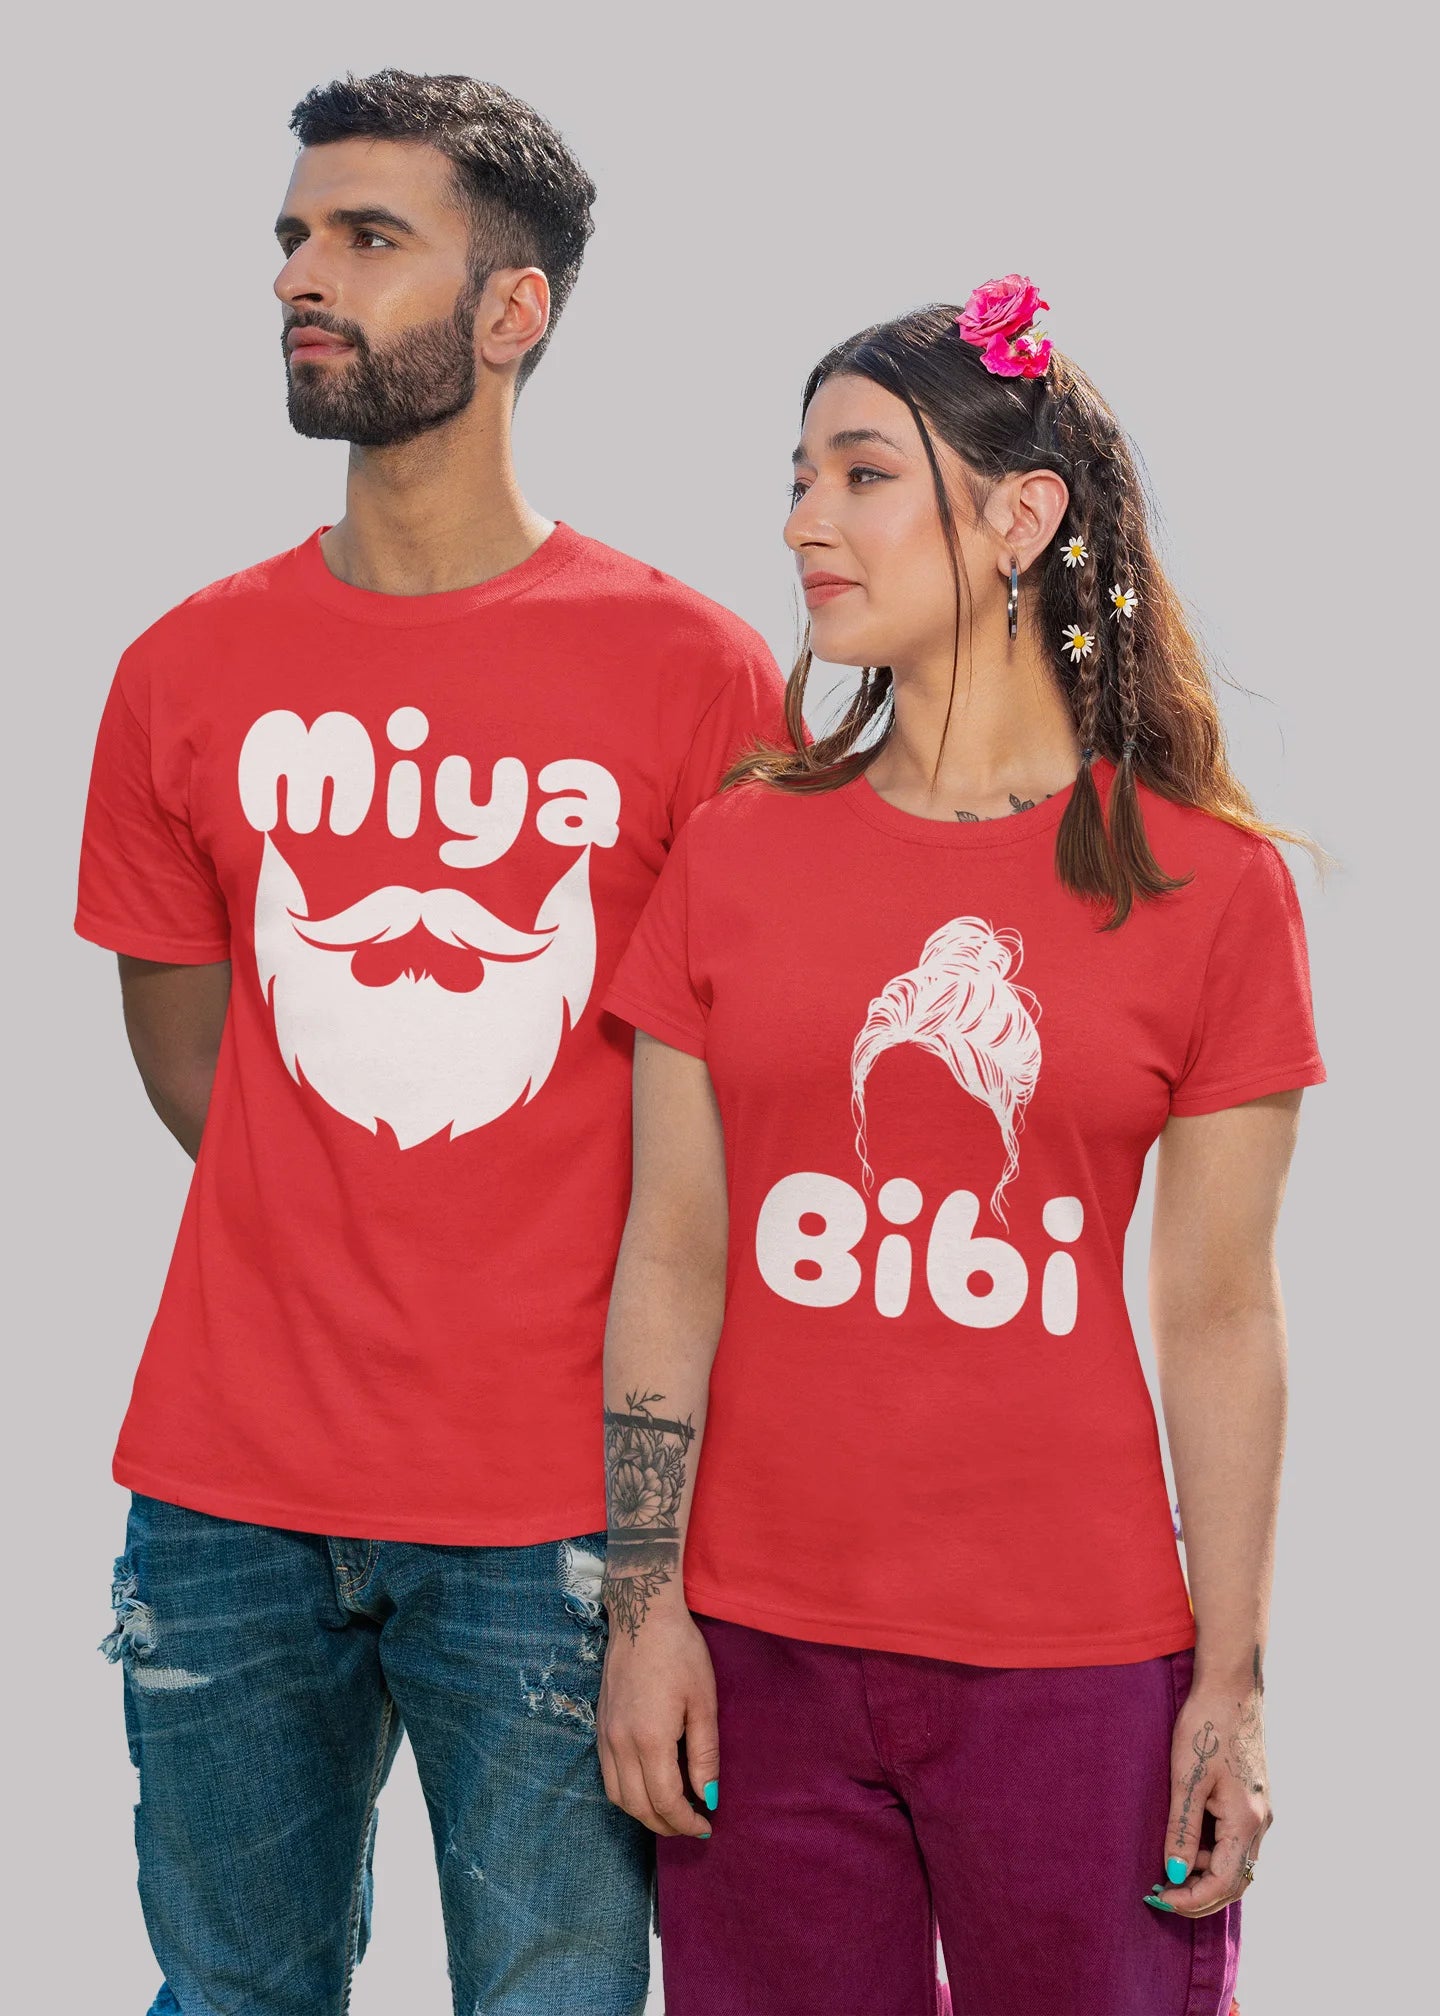 Miya Bibi Printed Couple T-shirt